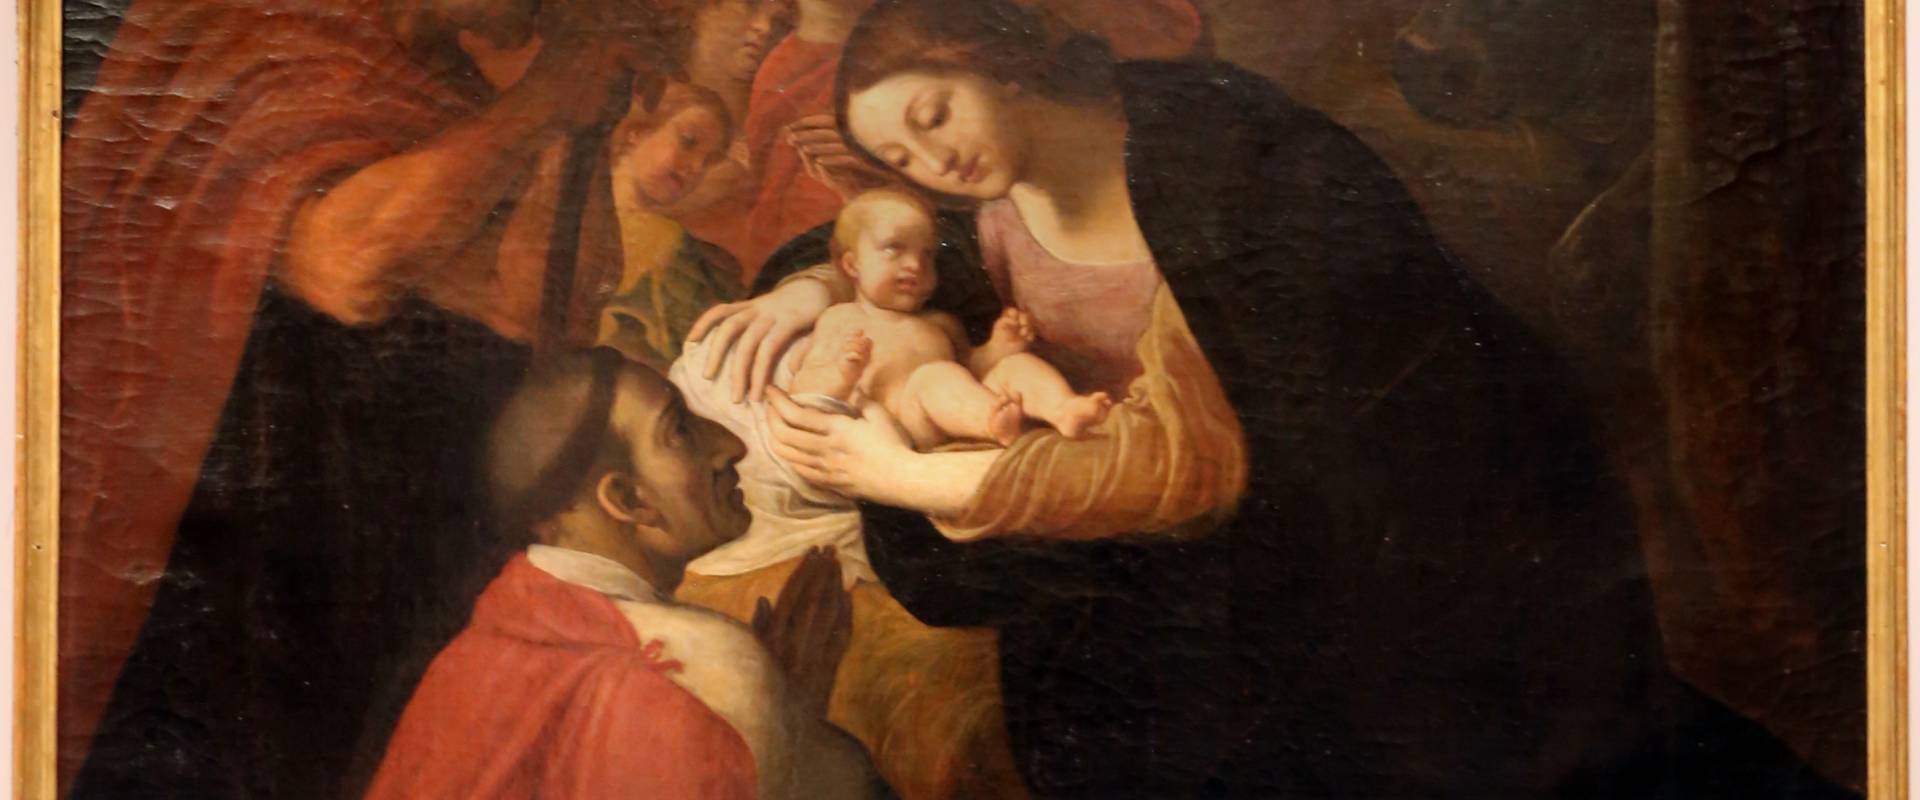 Ludovico carracci, san carlo borromeo in adorazione del bambino, 1614-16, da s. bernardo a bologna foto di Sailko